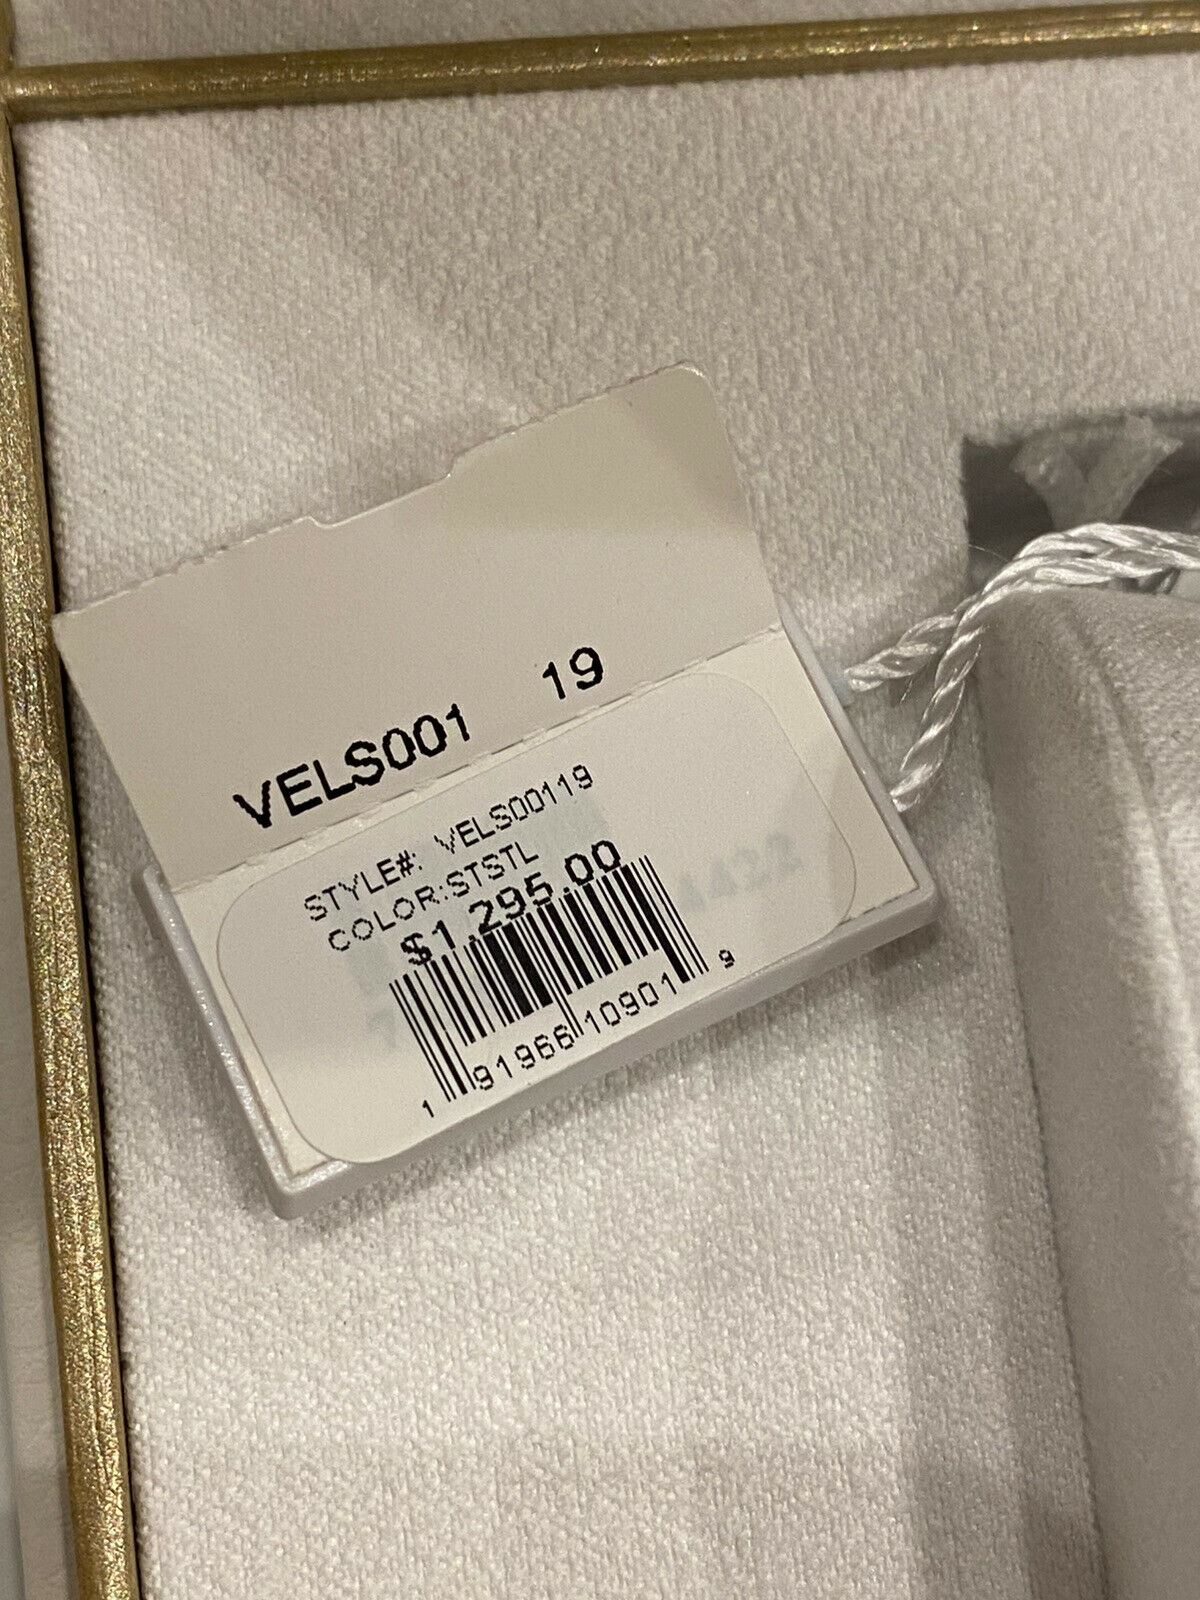 NIB Женские часы Versace из нержавеющей стали и кожаного ремешка стоимостью 1295 долларов США 